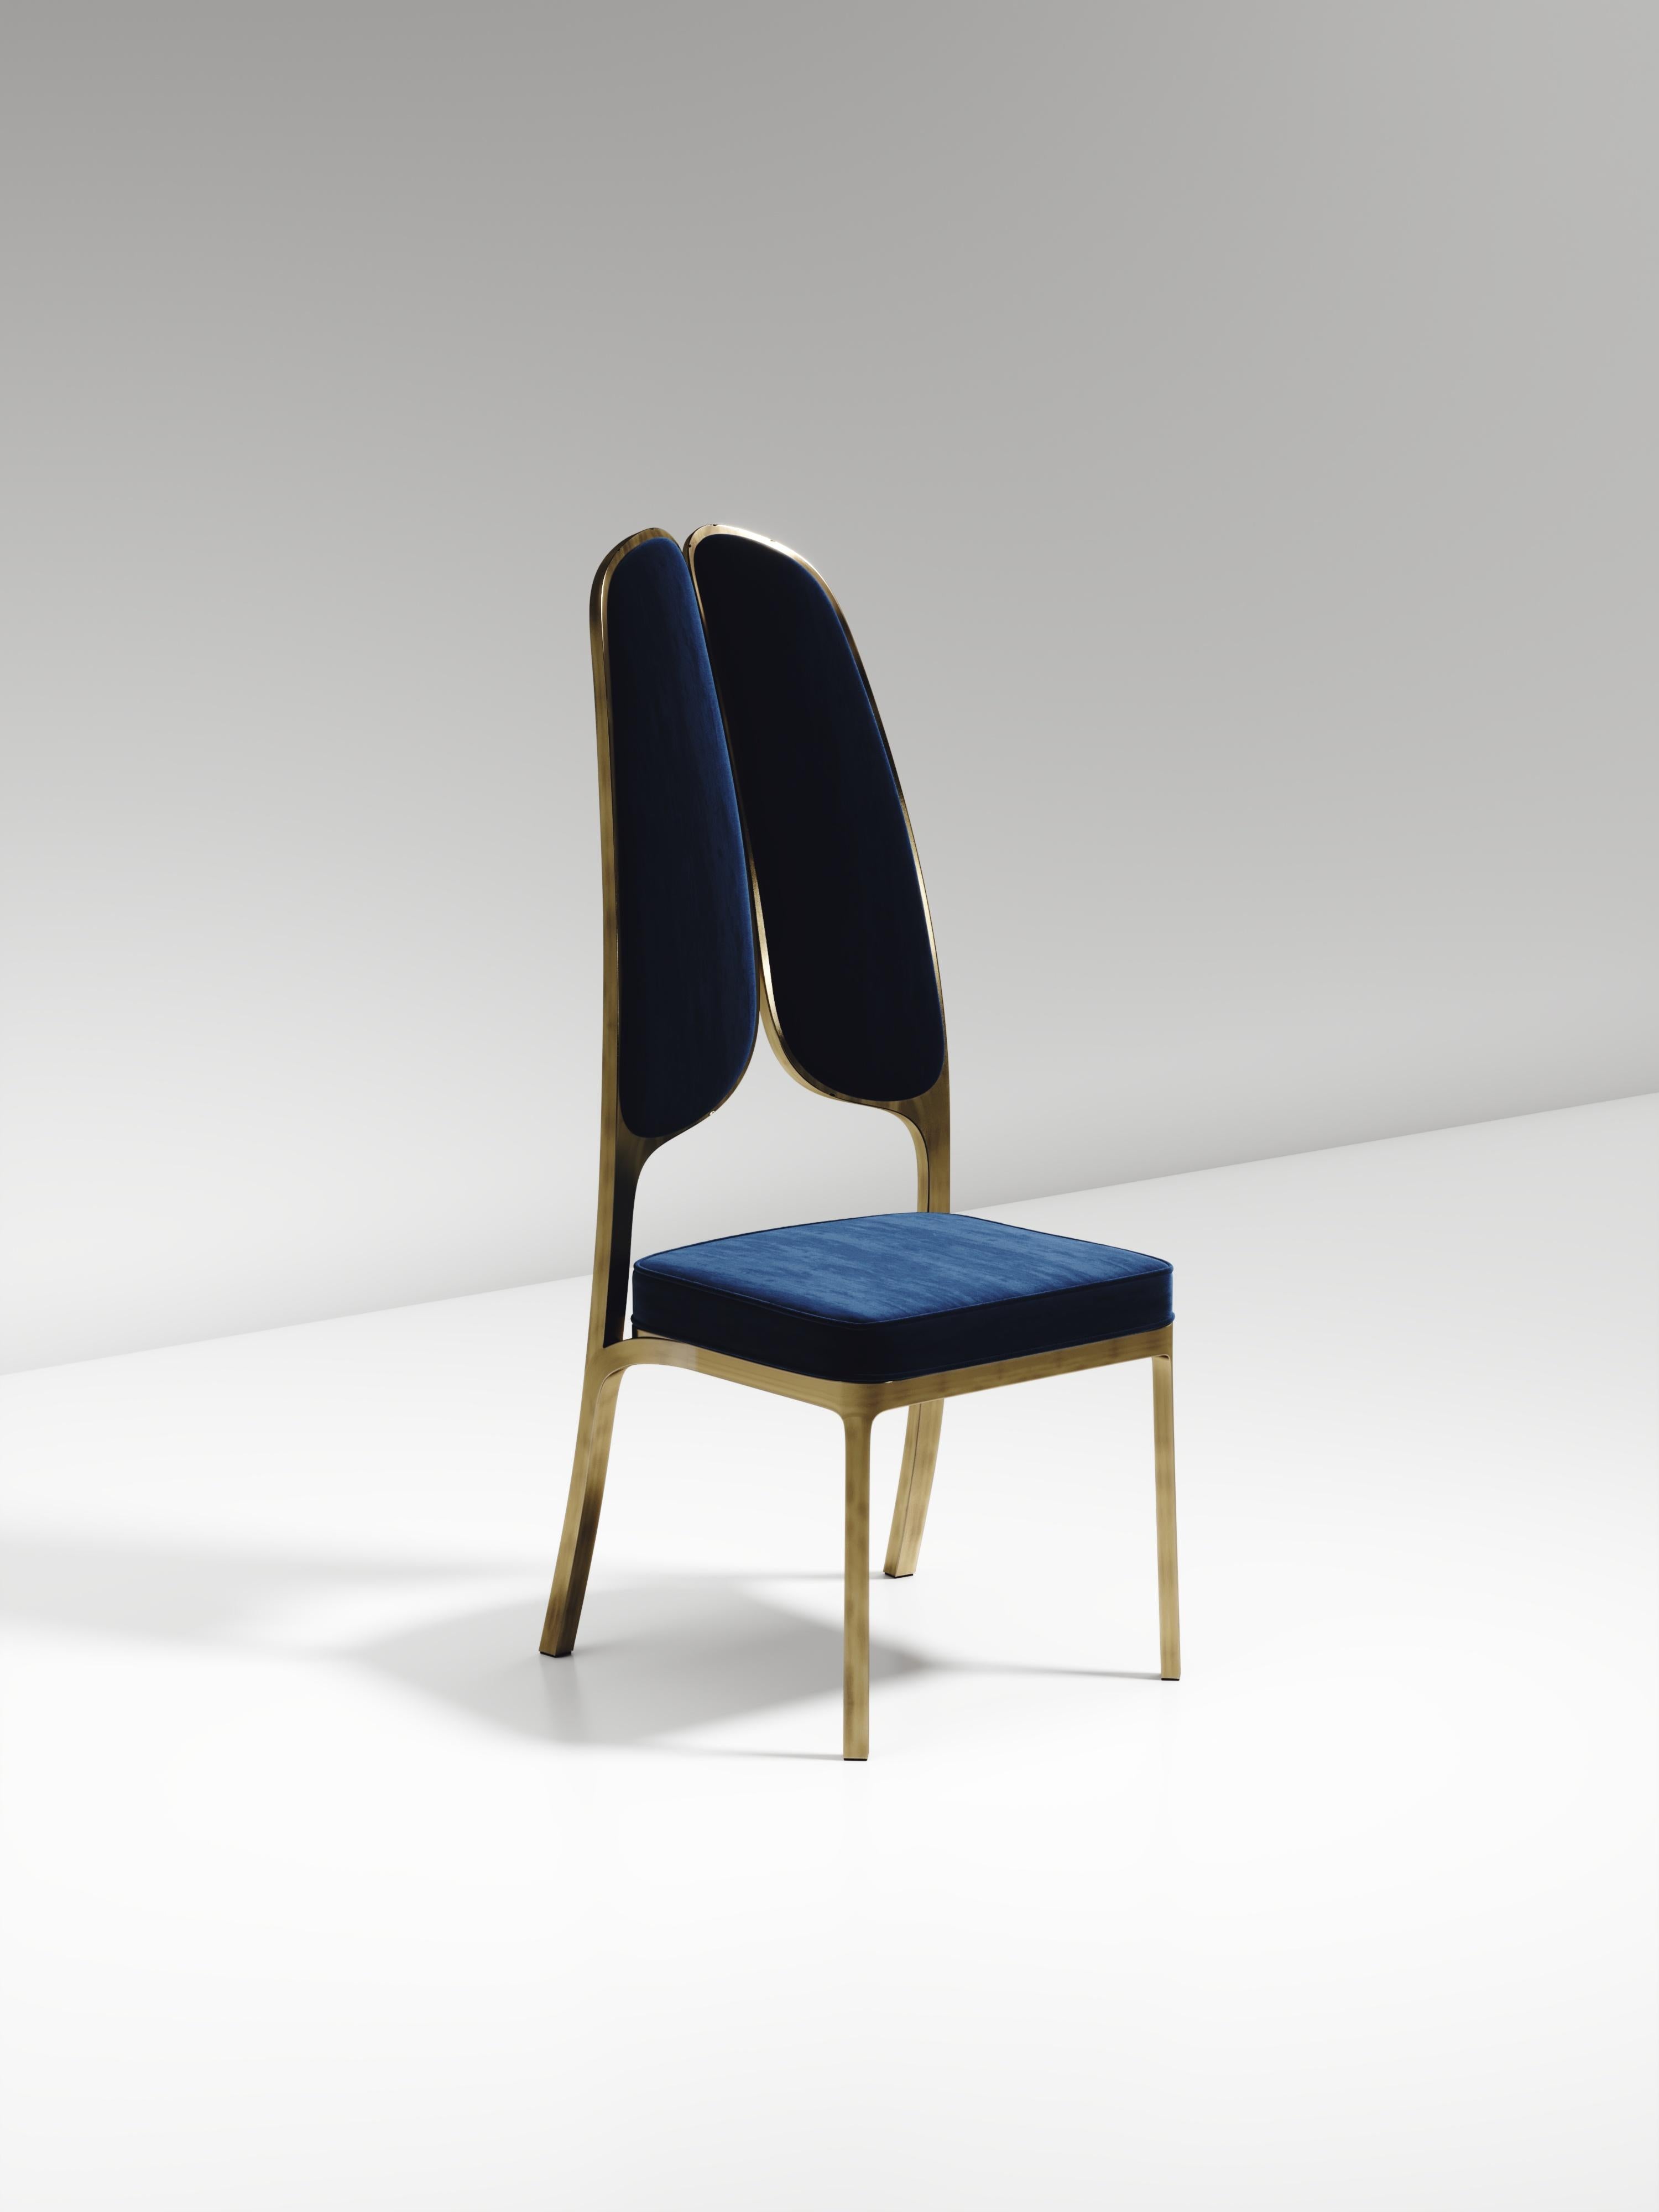 La chaise de salle à manger Gingko de R&Y Augousti est une pièce élégante et fantaisiste. Ce meuble rembourré en velours bleu offre un grand confort tout en dégageant une esthétique ludique dans son clin d'œil abstrait à un papillon par la forme de